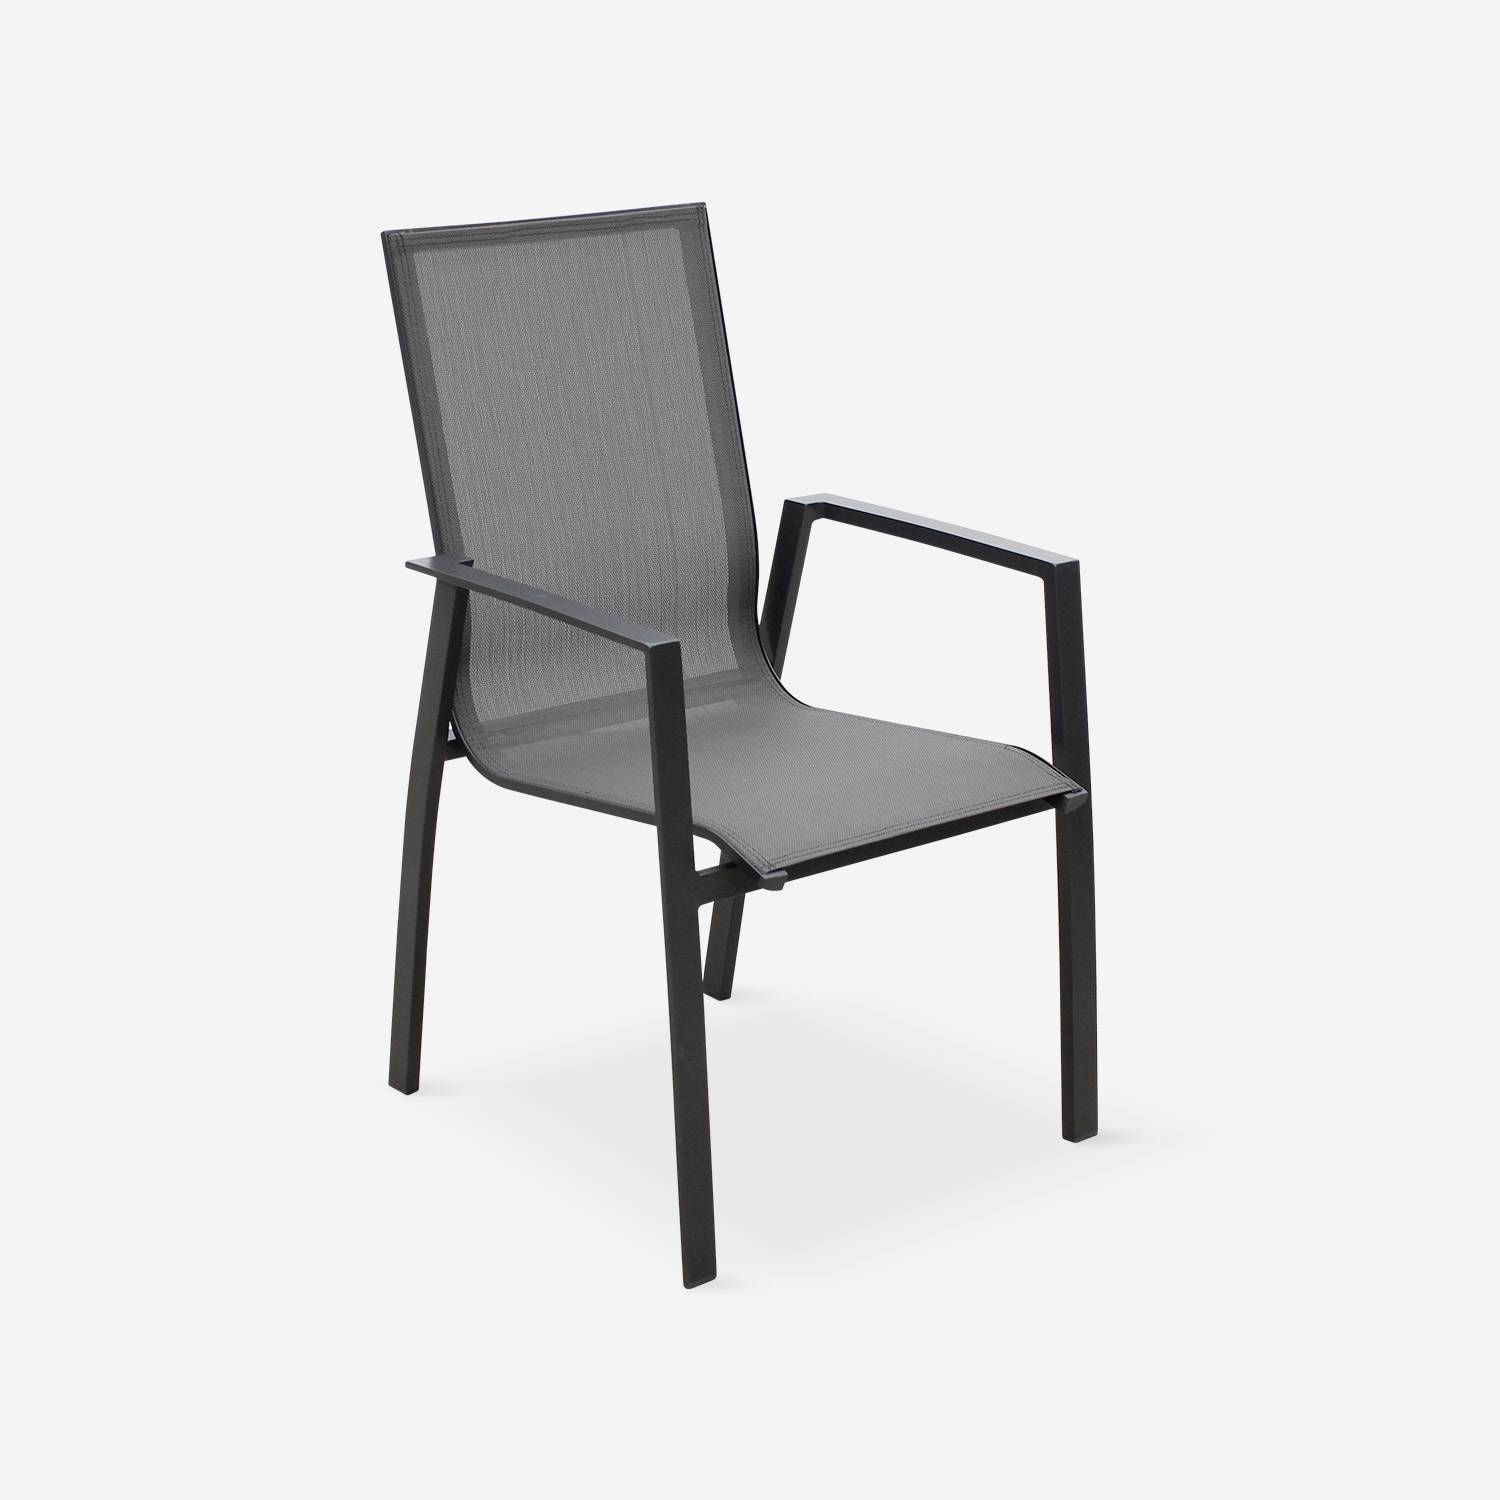 Coppia di sedie Washington Antracite/ Grigio scuro in alluminio antracite e textilene colore grigio scuro, impilabili Photo2